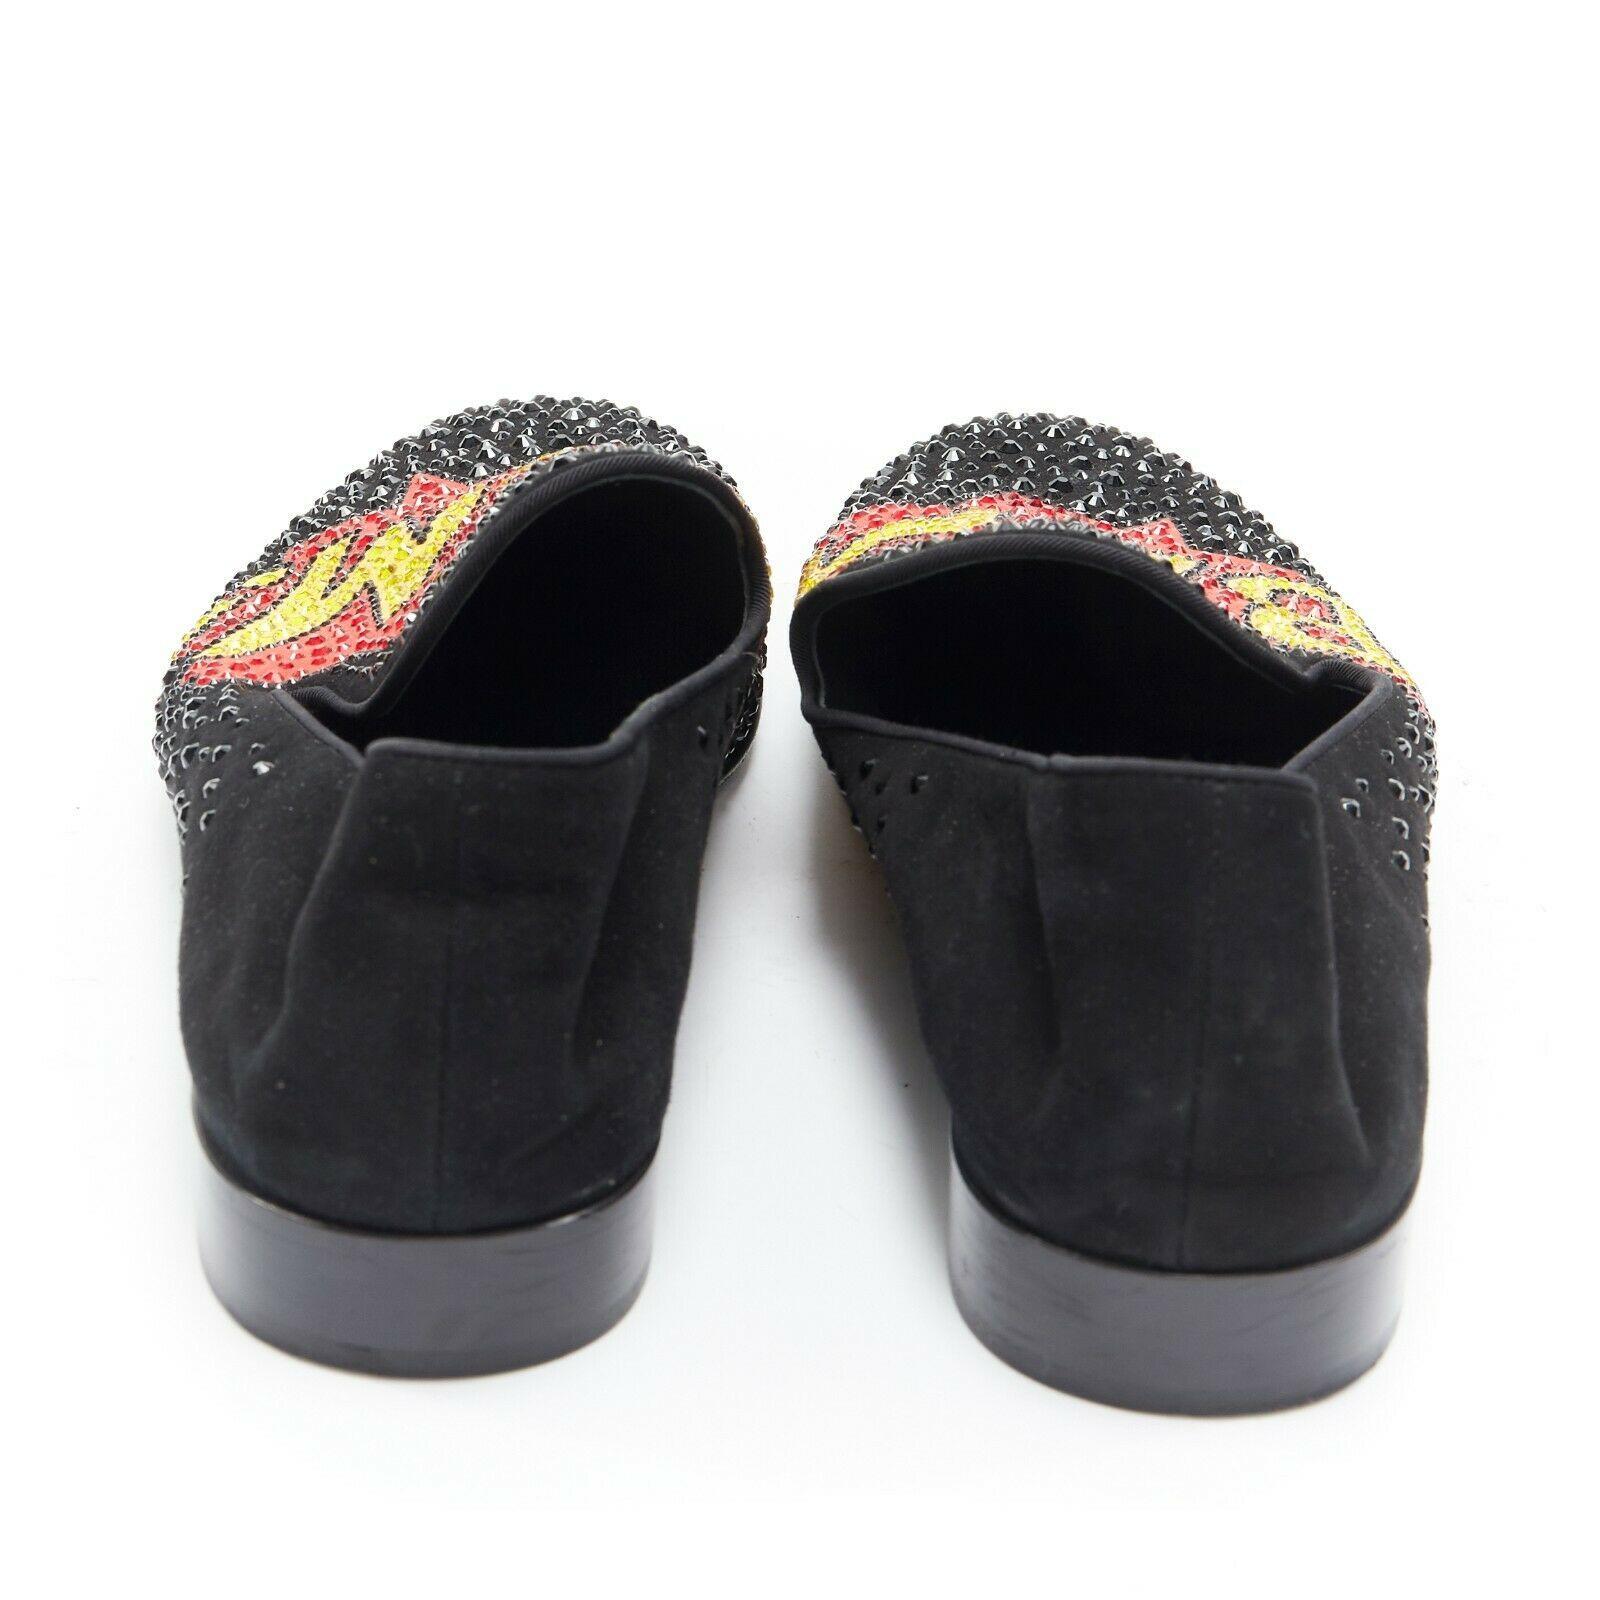 Men's GIUSEPPE ZANOTTI 2019 Bam crystal embellished pop art black suede loafer EU44